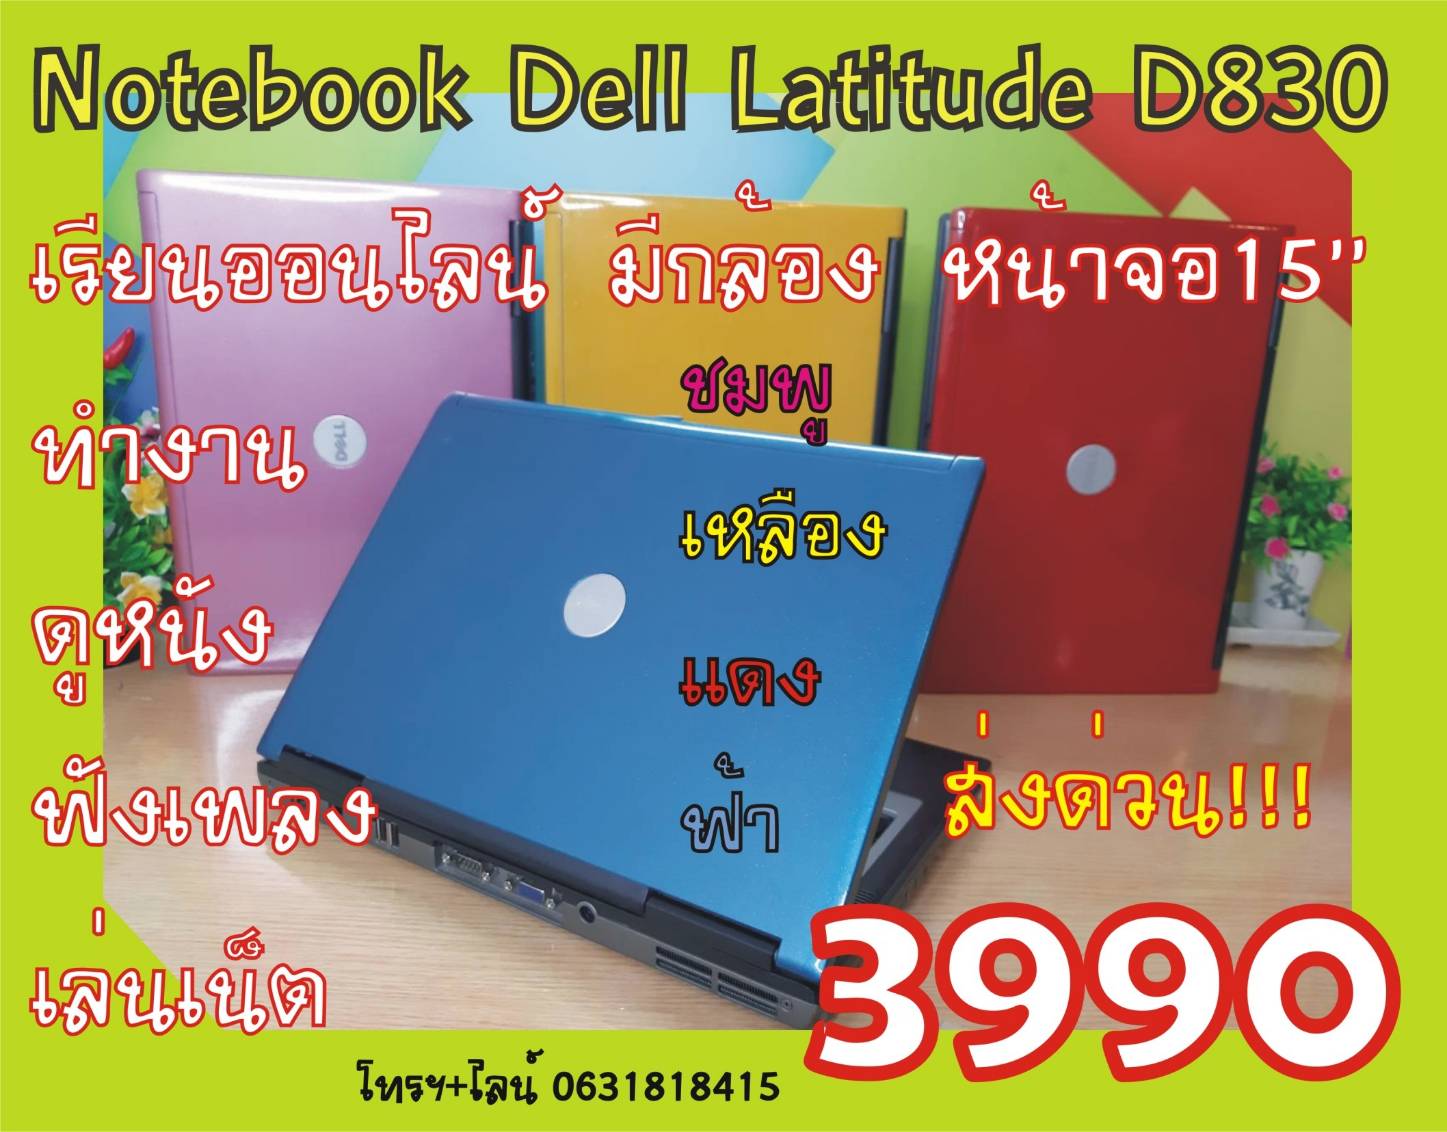 สีฟ้า โน๊ตบุคเพื่อการศึกษาNotebook Dell Latitude D830 Core2/Ram2GB/HDD160GB/15